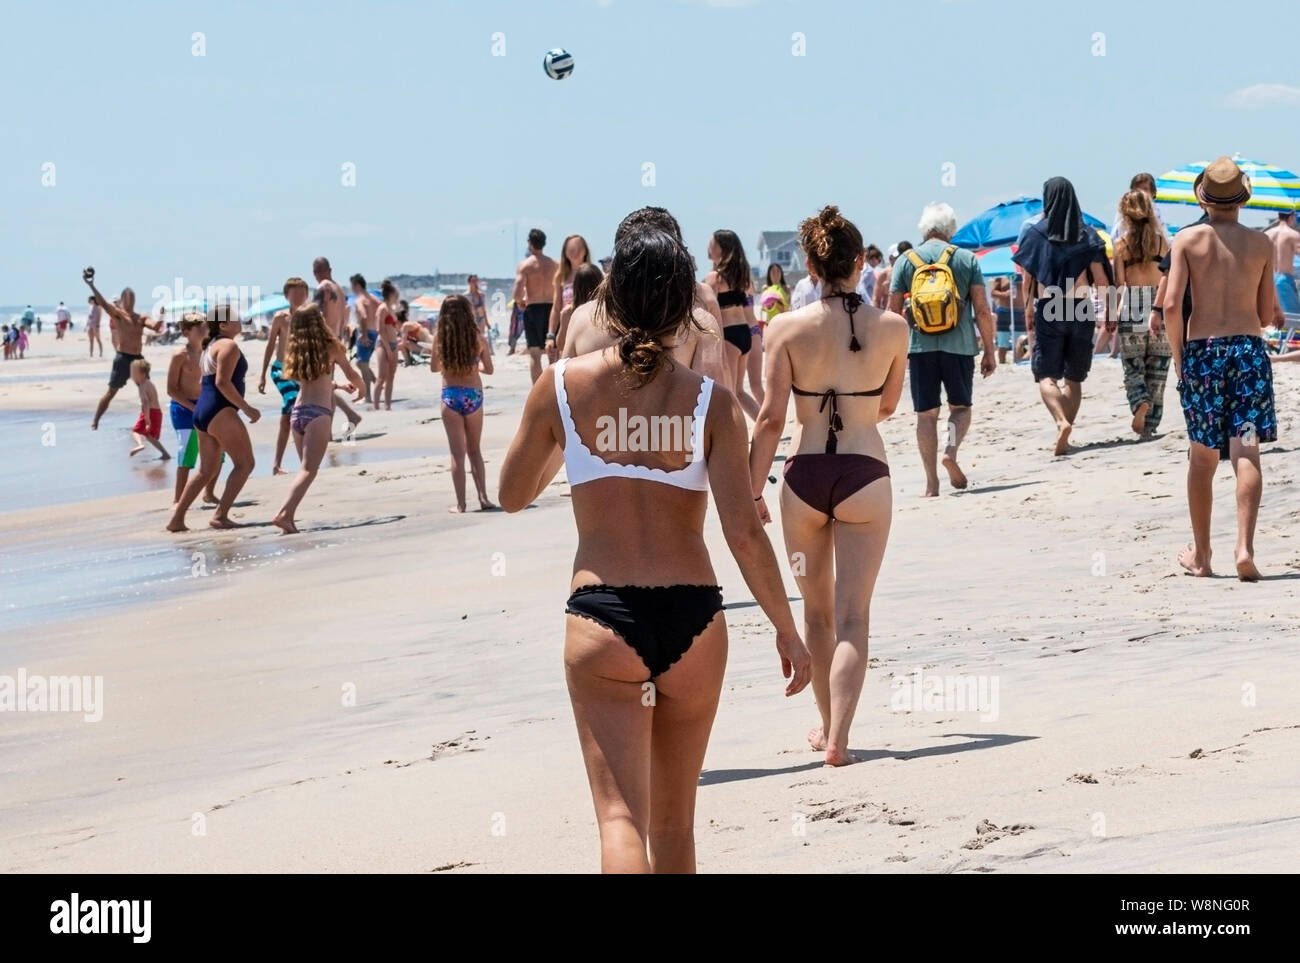 Viele Leute auf dem Wasser von einem Strand, Wandern, Ball spielen und Spaß am Memorial Day auf dem long island Küste. Stockfoto